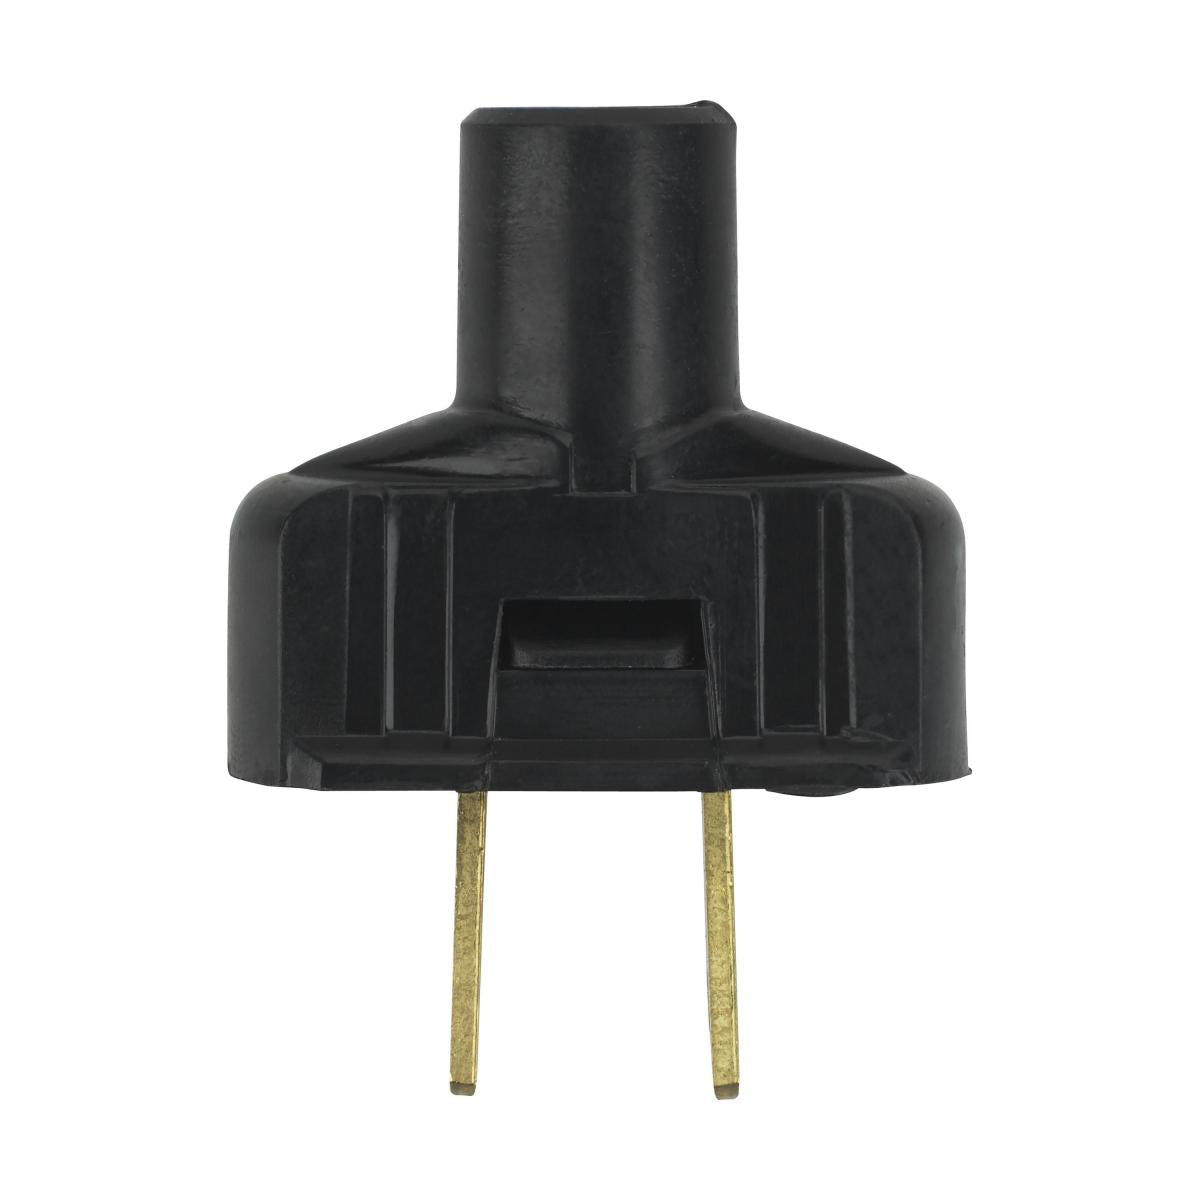 Satco 90-1116 Attachment Plug With Terminal Screws Black Finish Non Polarized 18/2-SVT Round Wire 15A 125V